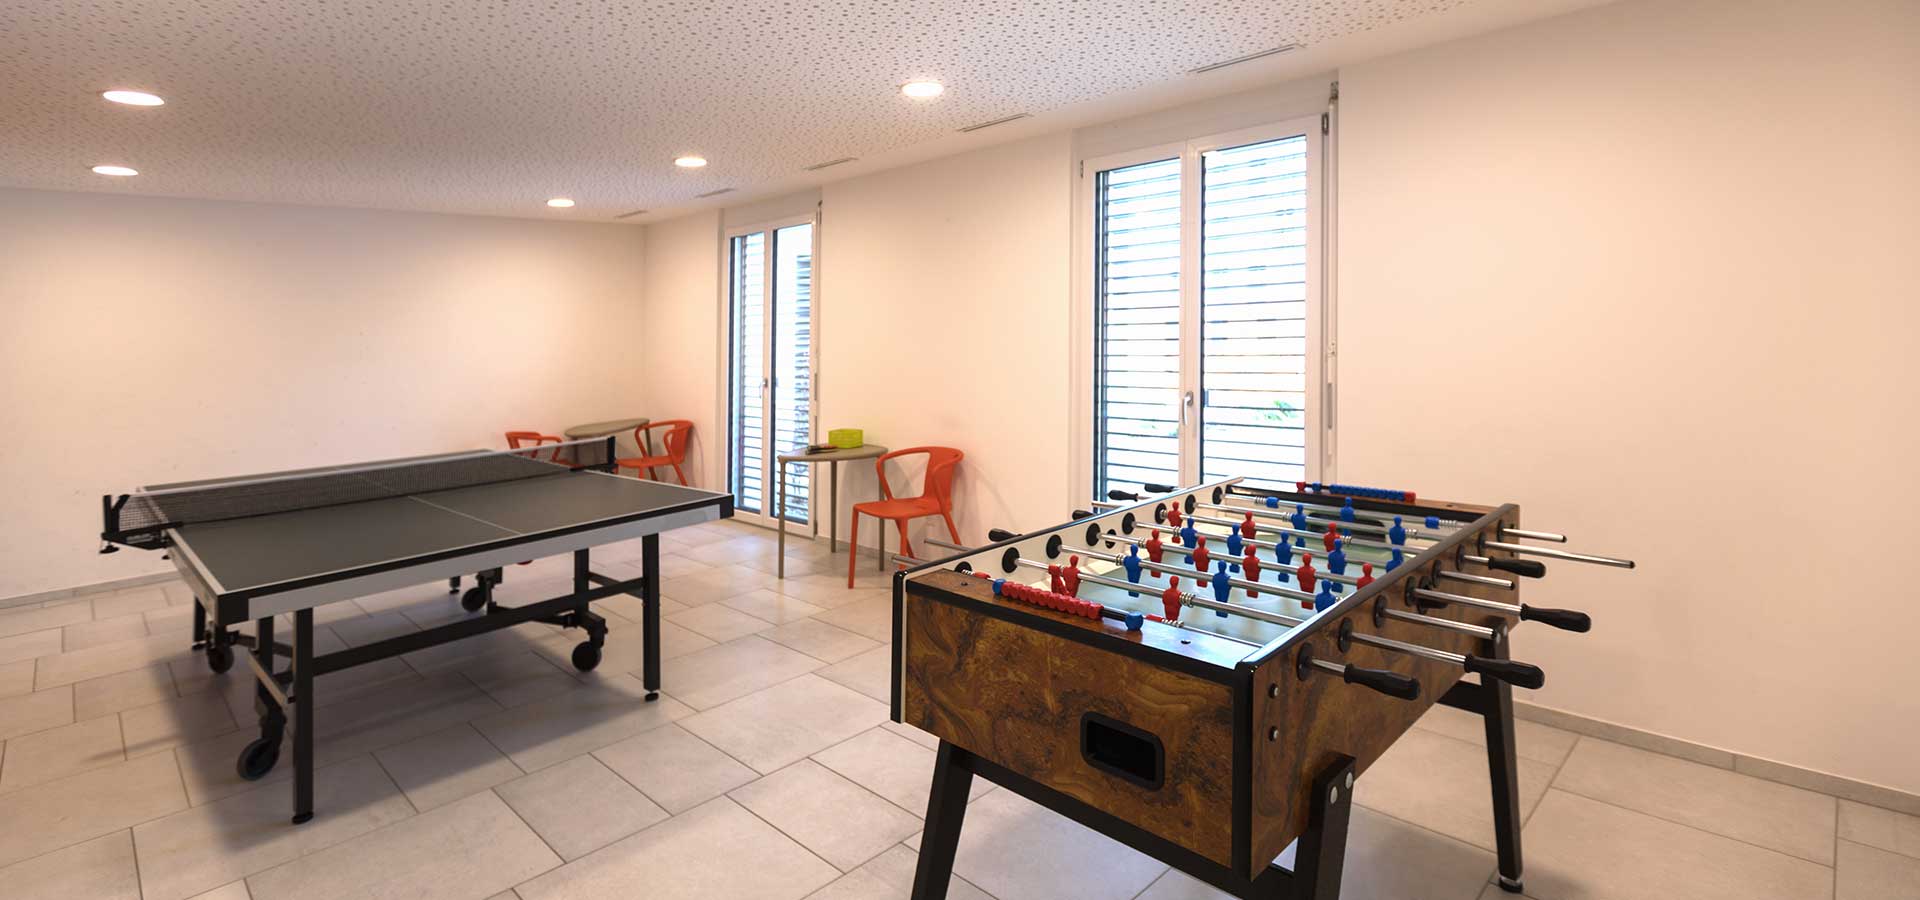 Most villas have games rooms